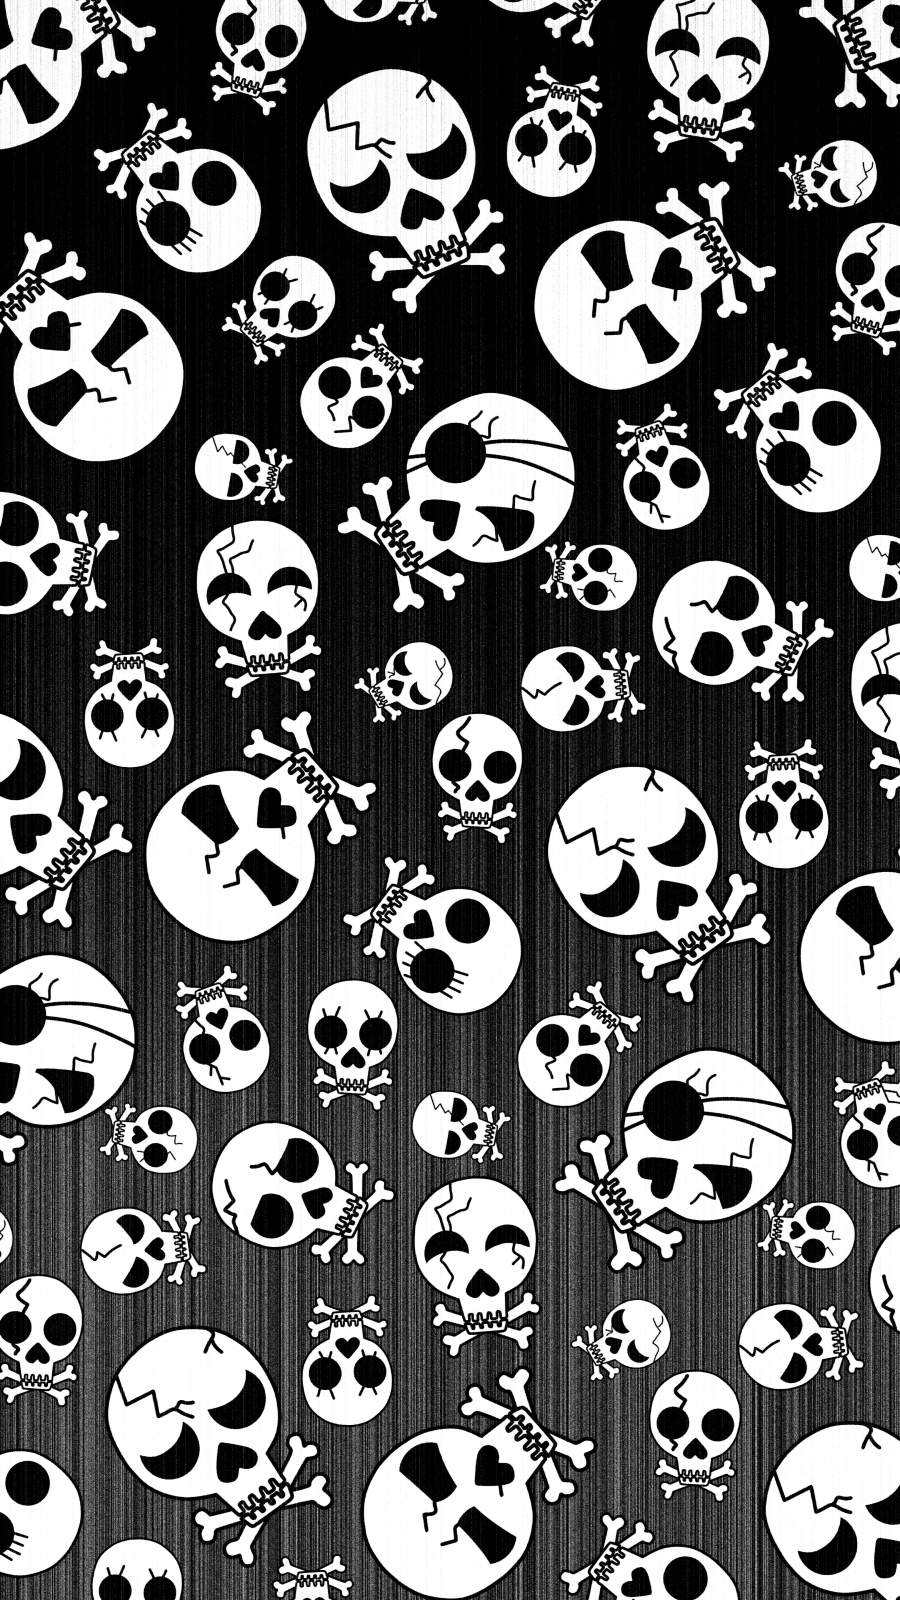 Halloween Skulls iPhone Wallpaper 13 pro max Wallpaper, iPhone 12 Background, iPhone Wallpaper, iPhone background., WallpaperUpdate, Best iPhone Wallpaper and iPhone background